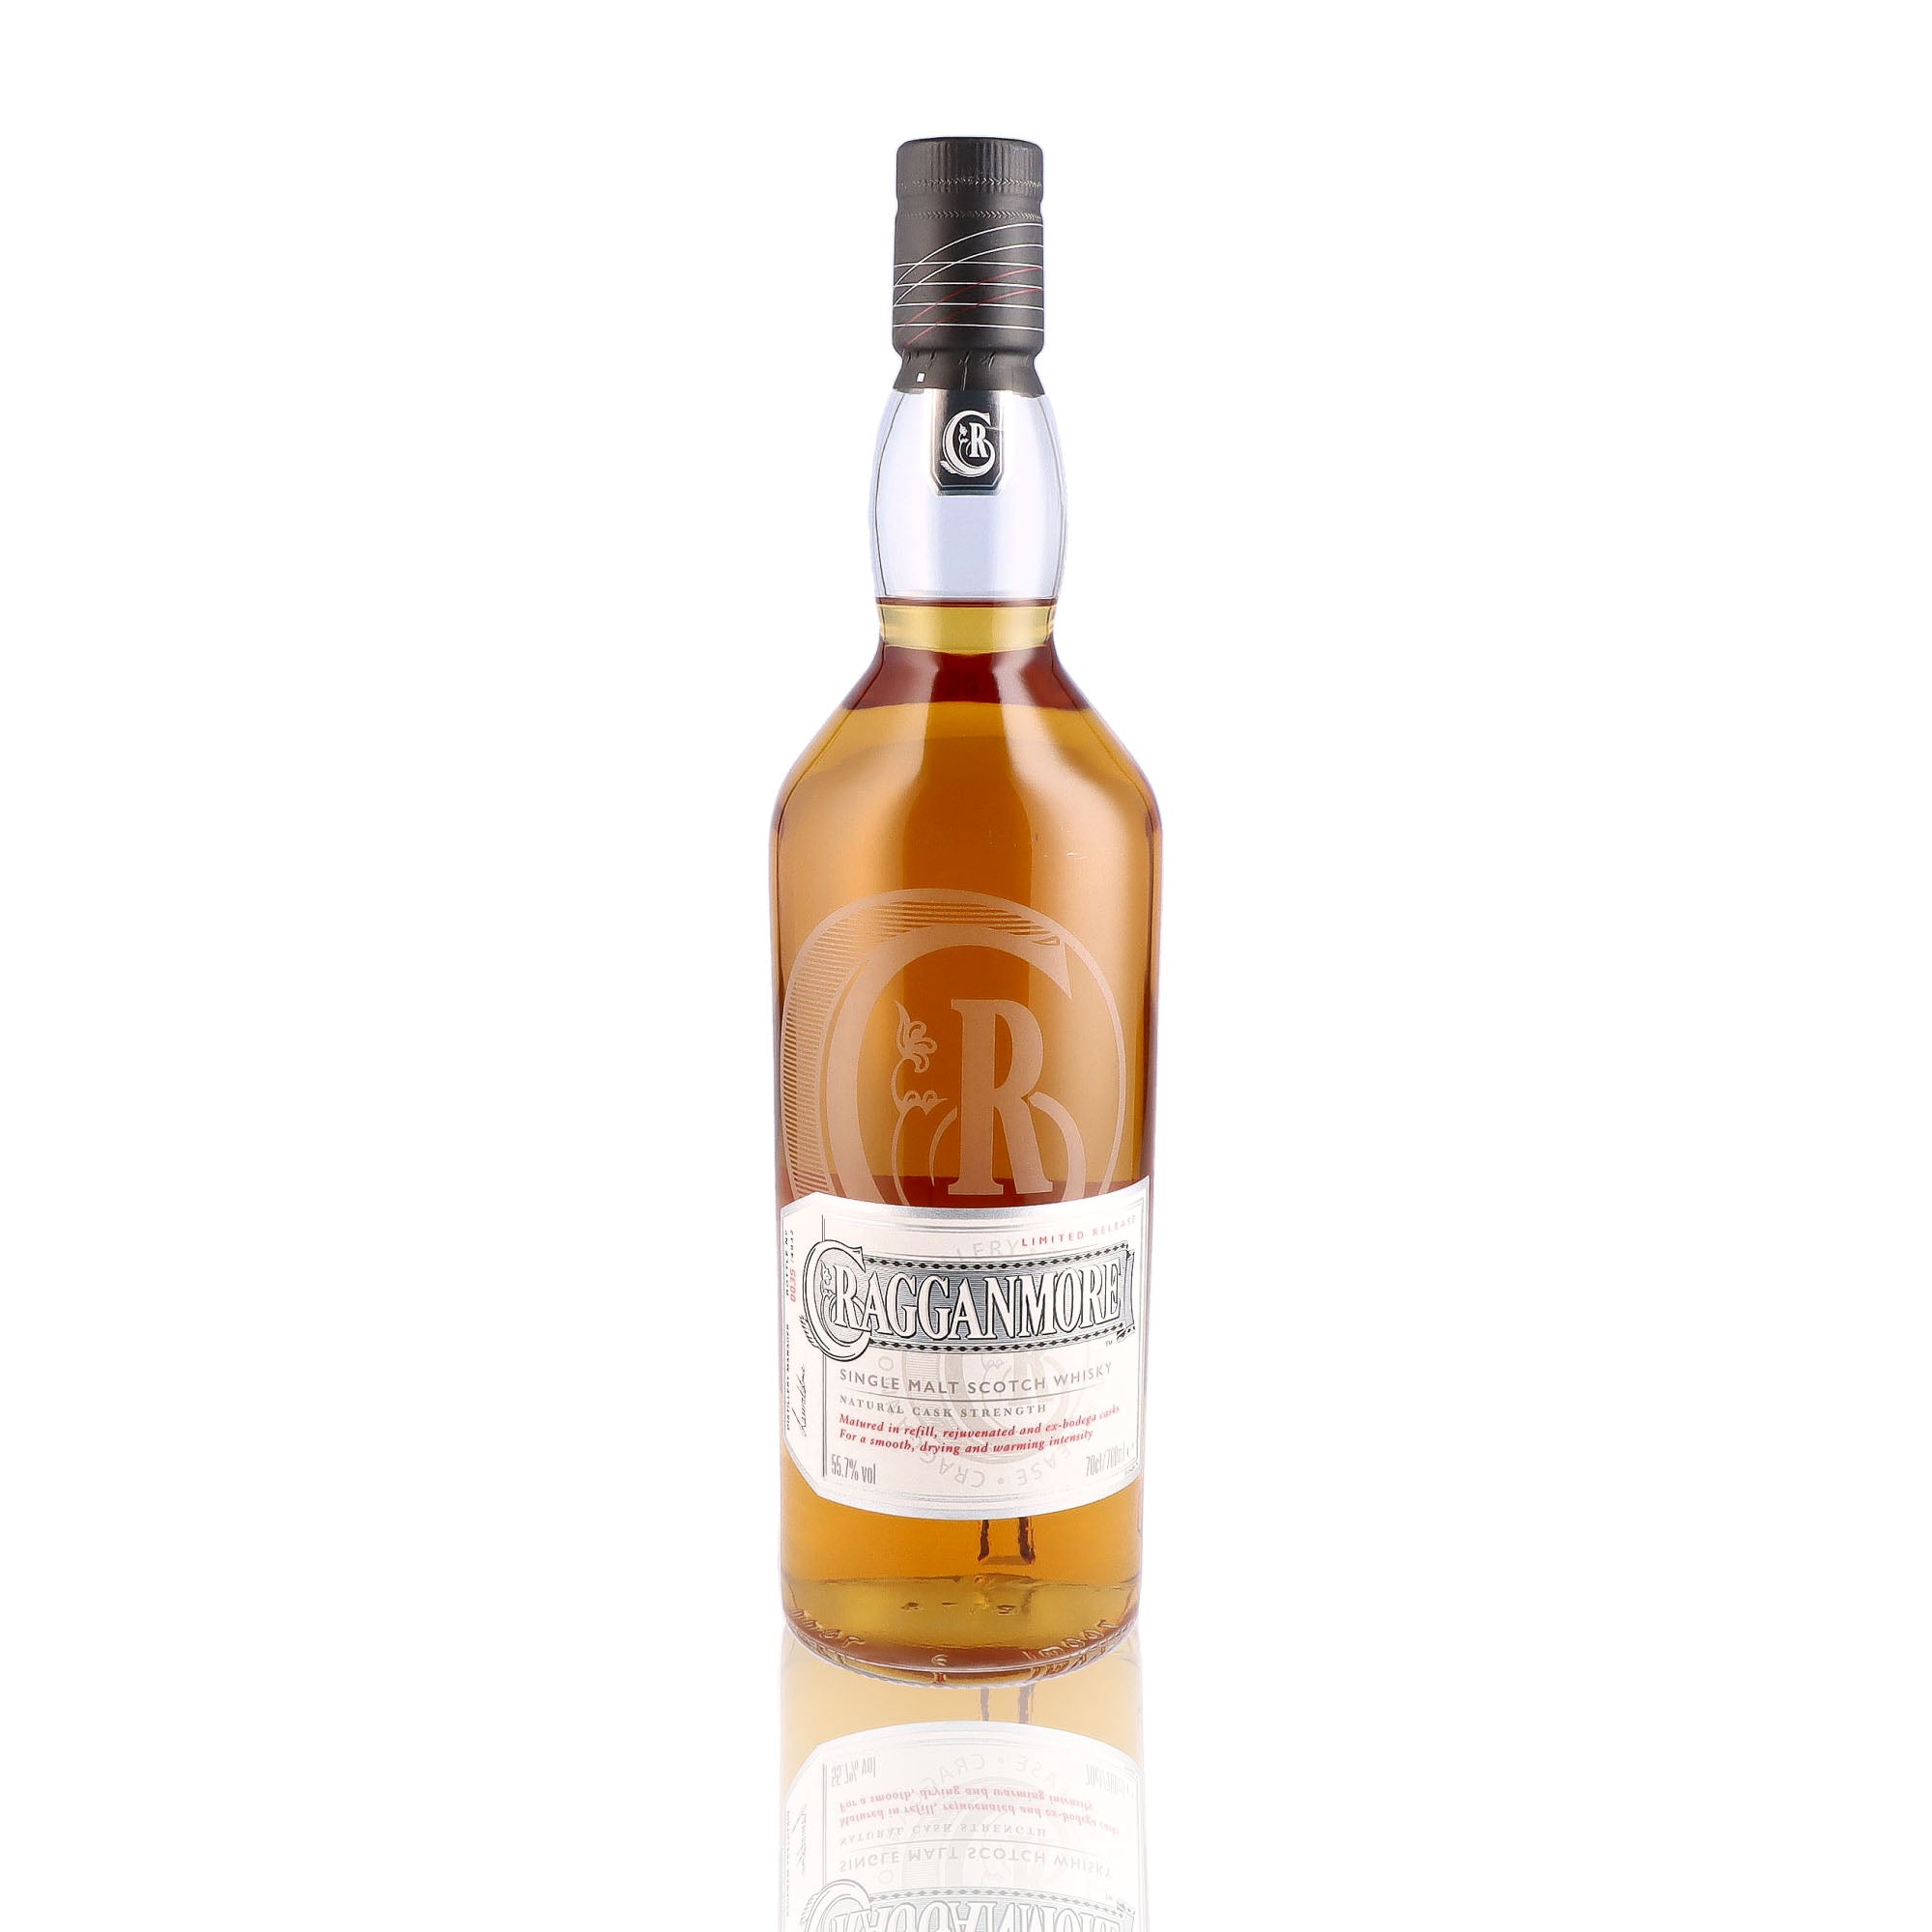 Une bouteille de Scotch Whisky Single Malt de la marque Cragganmore, nommée Limited Release